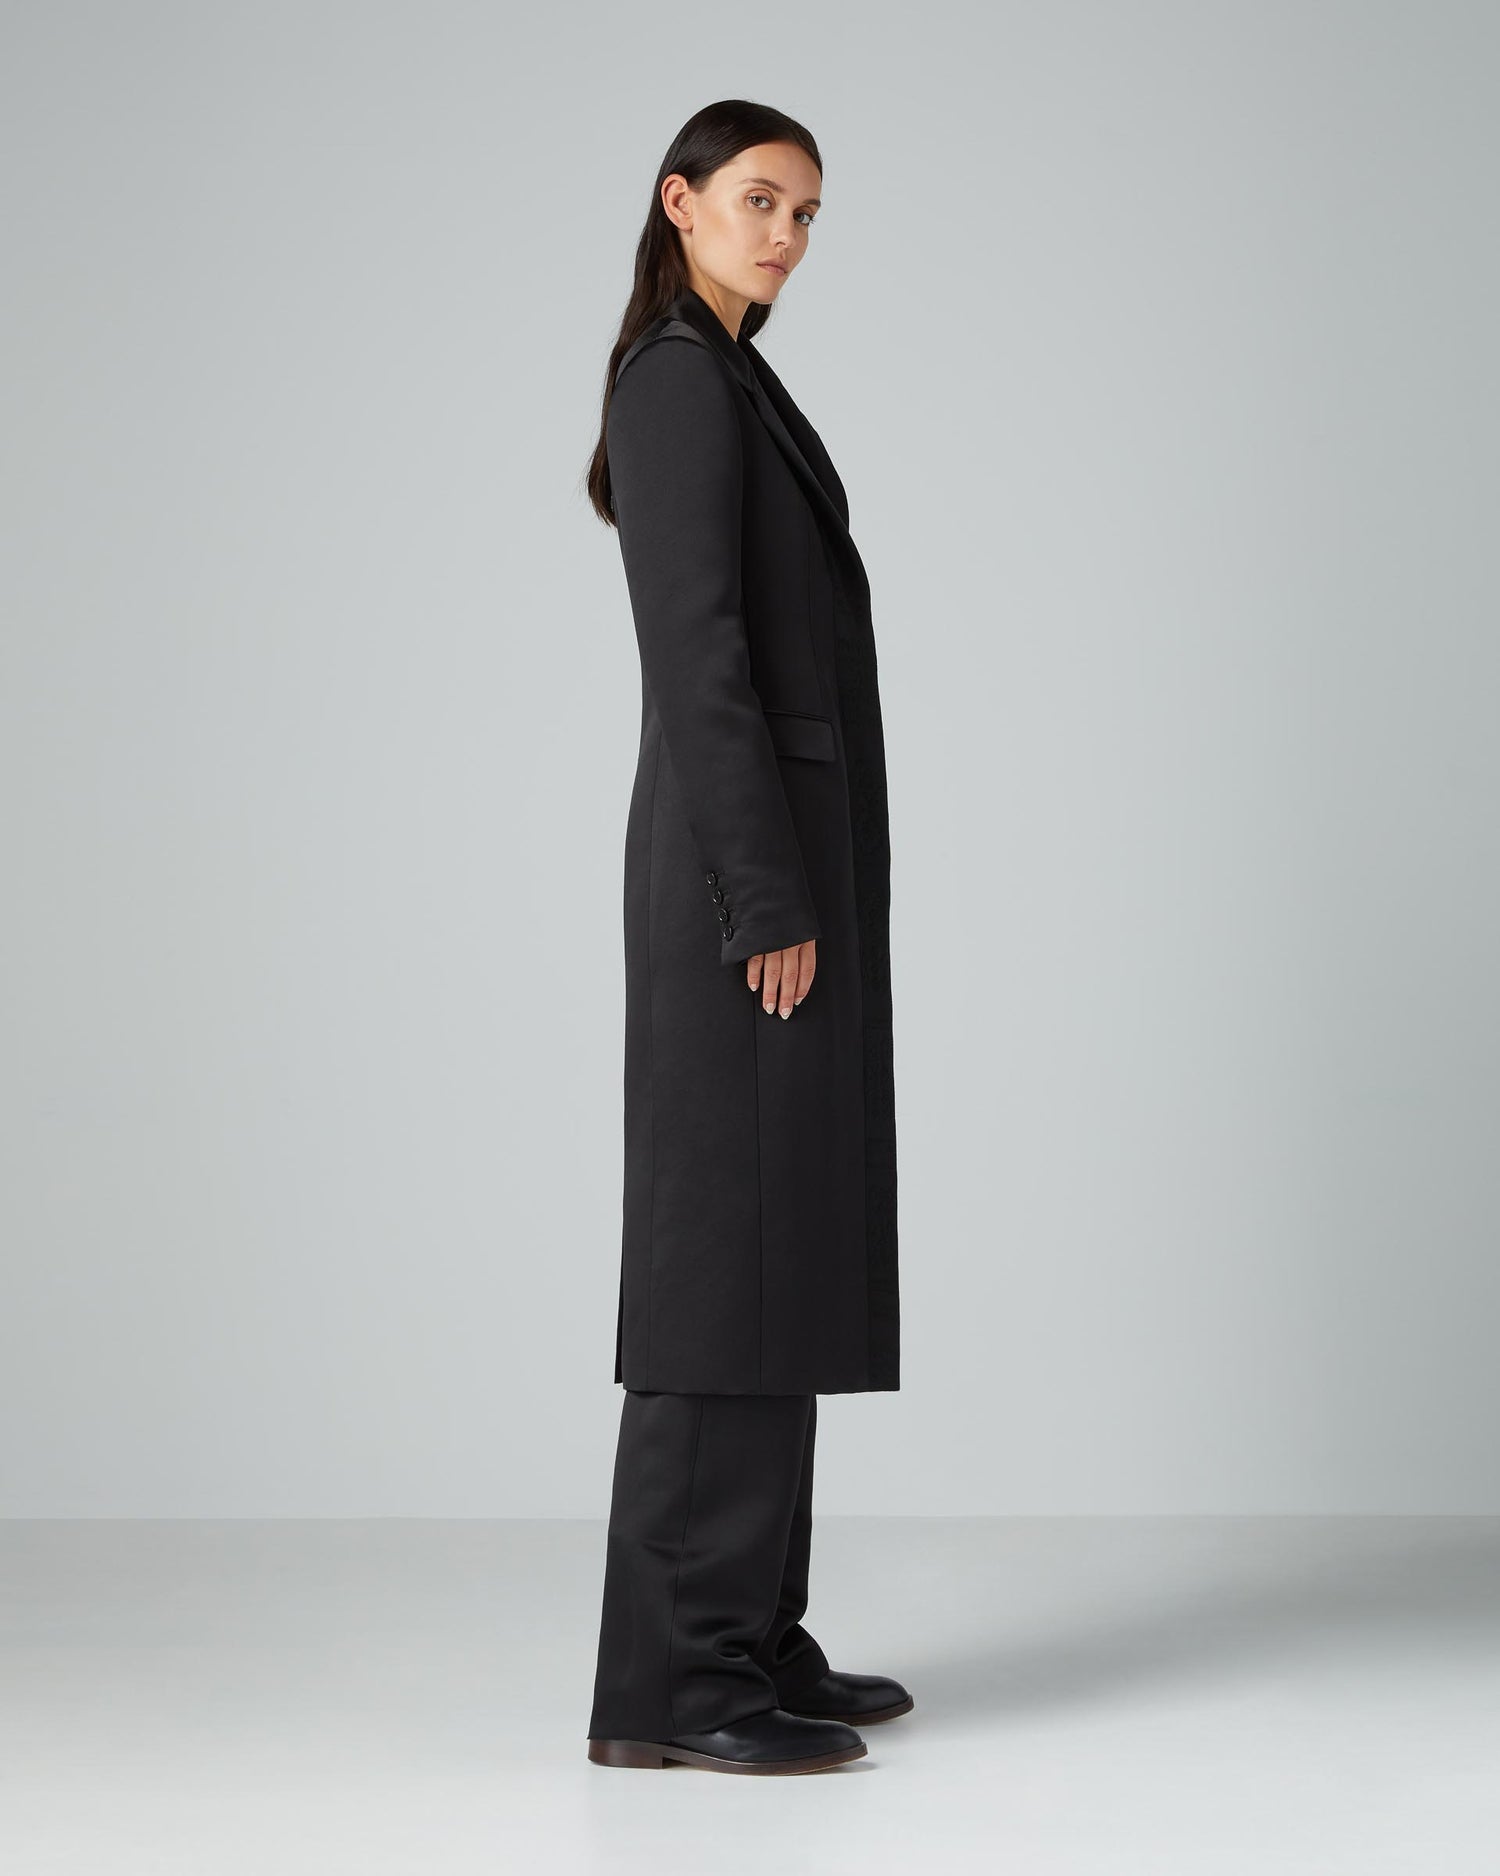 Freya Coat in Duchess Silk, Black